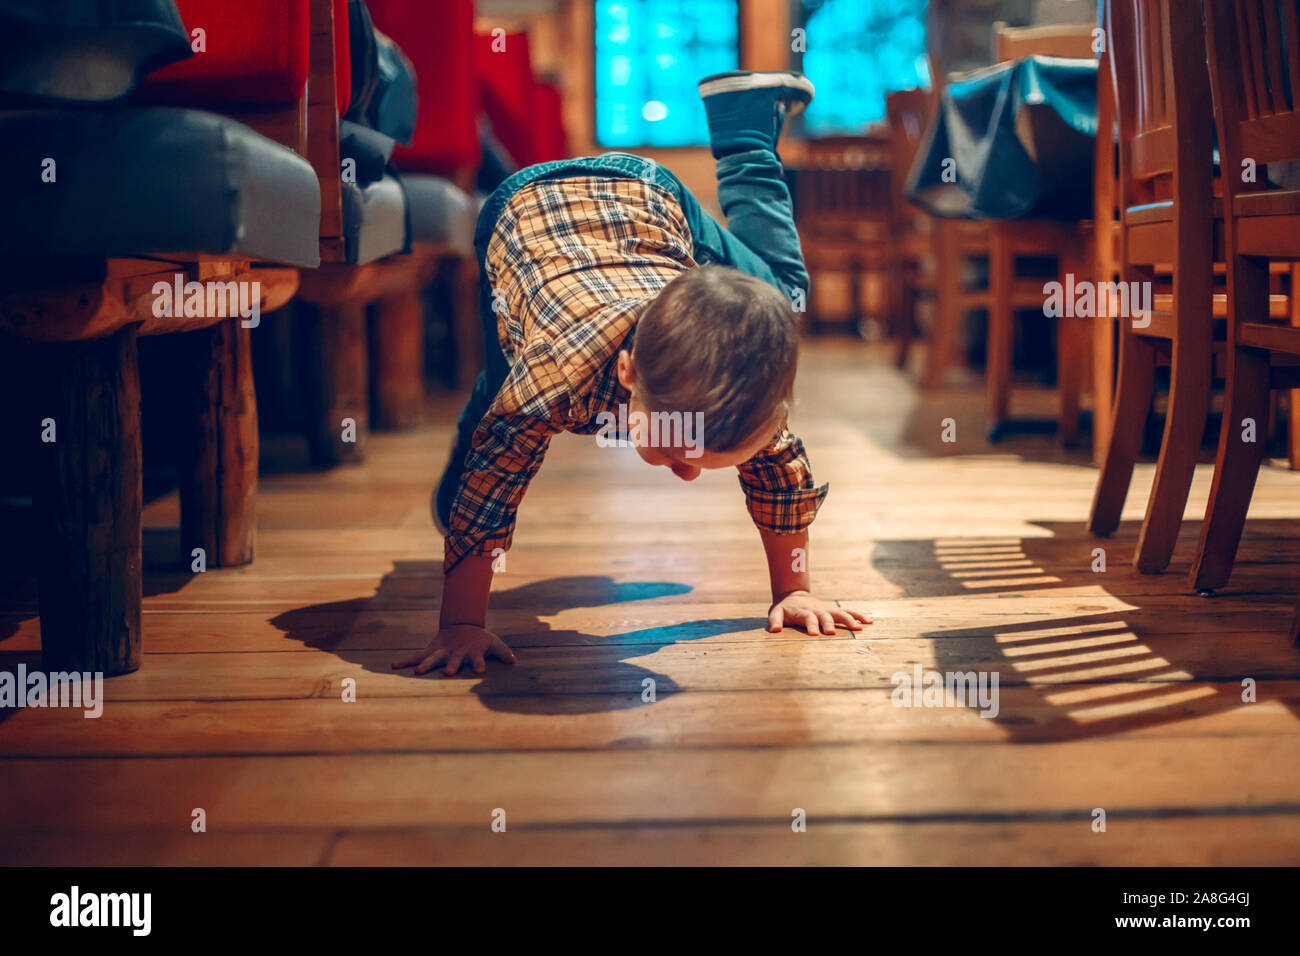 Cute adorable Junge drei Jahre alt Spaß im Cafe Restaurant. Kinder spielen auf dem Boden in der Öffentlichkeit. Freiheit der Meinungsäußerung und Verhalten für Stockfoto